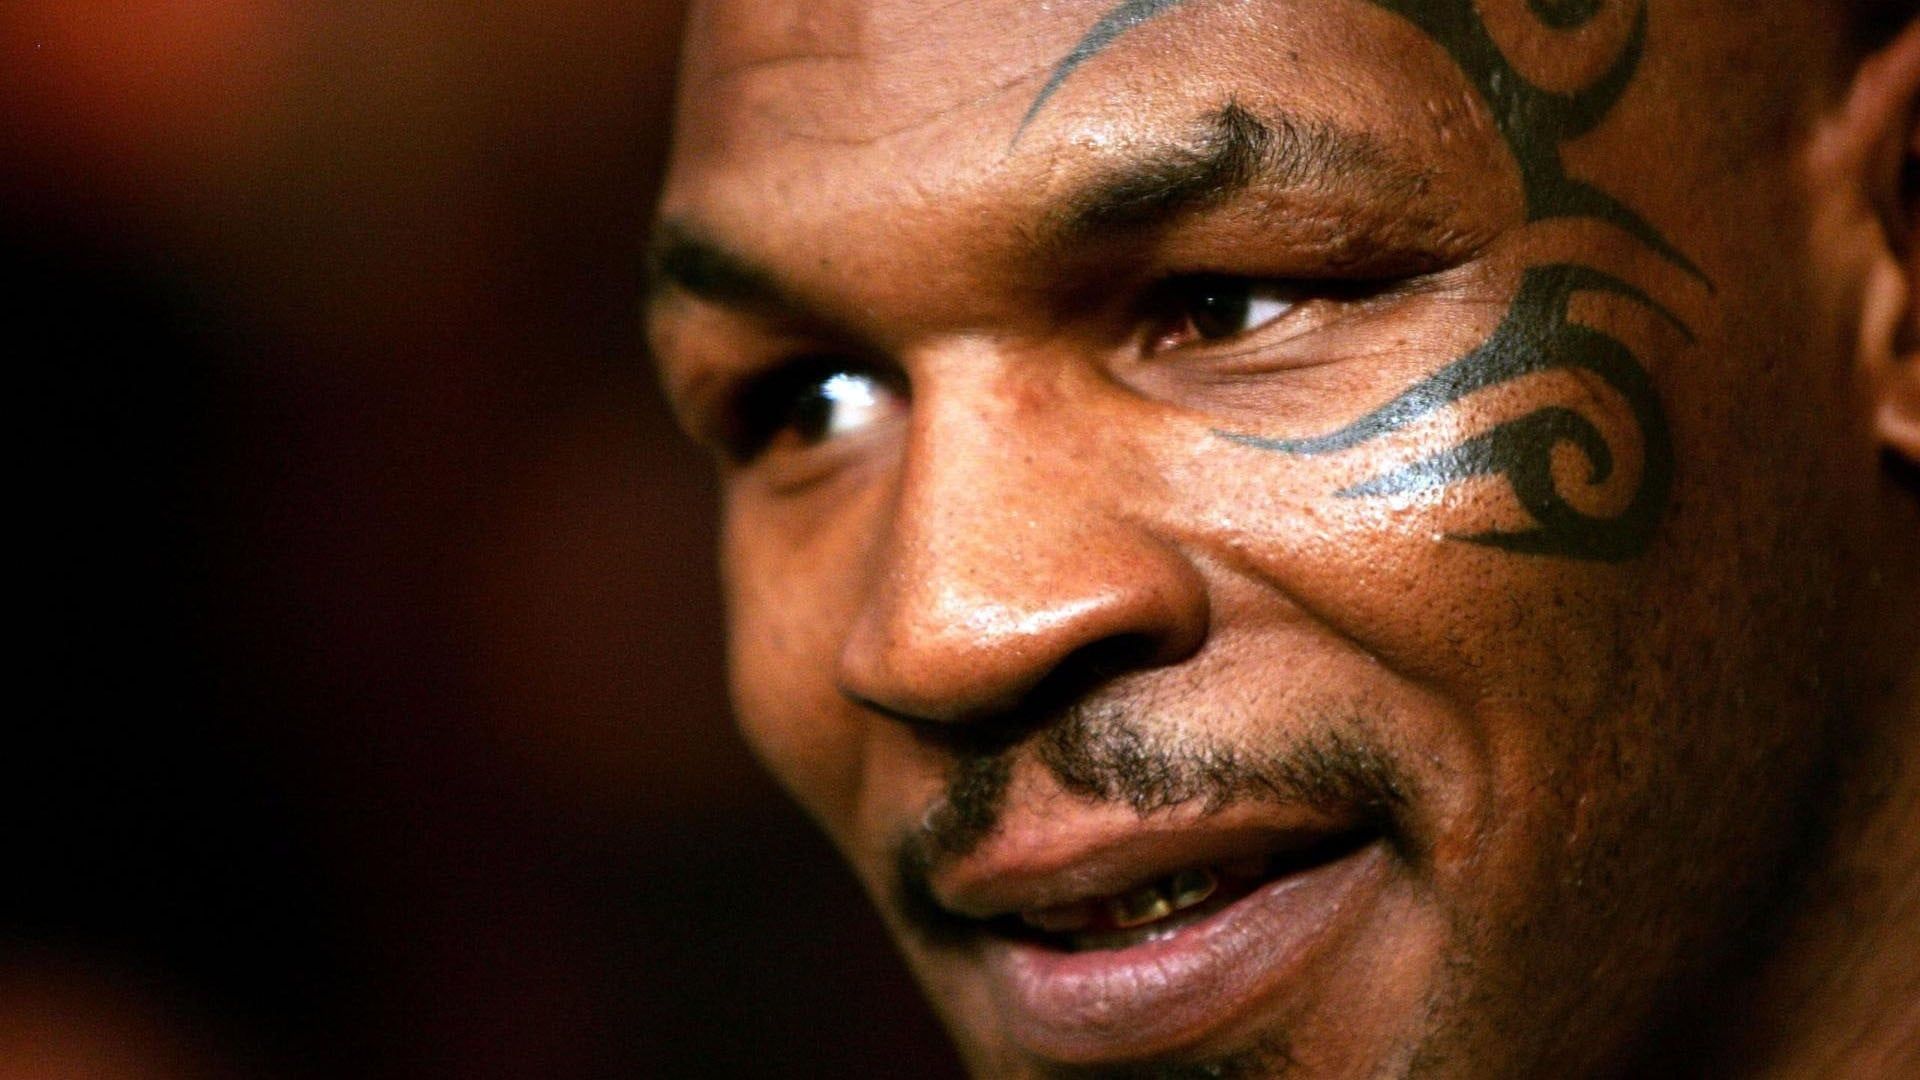 Tyson background